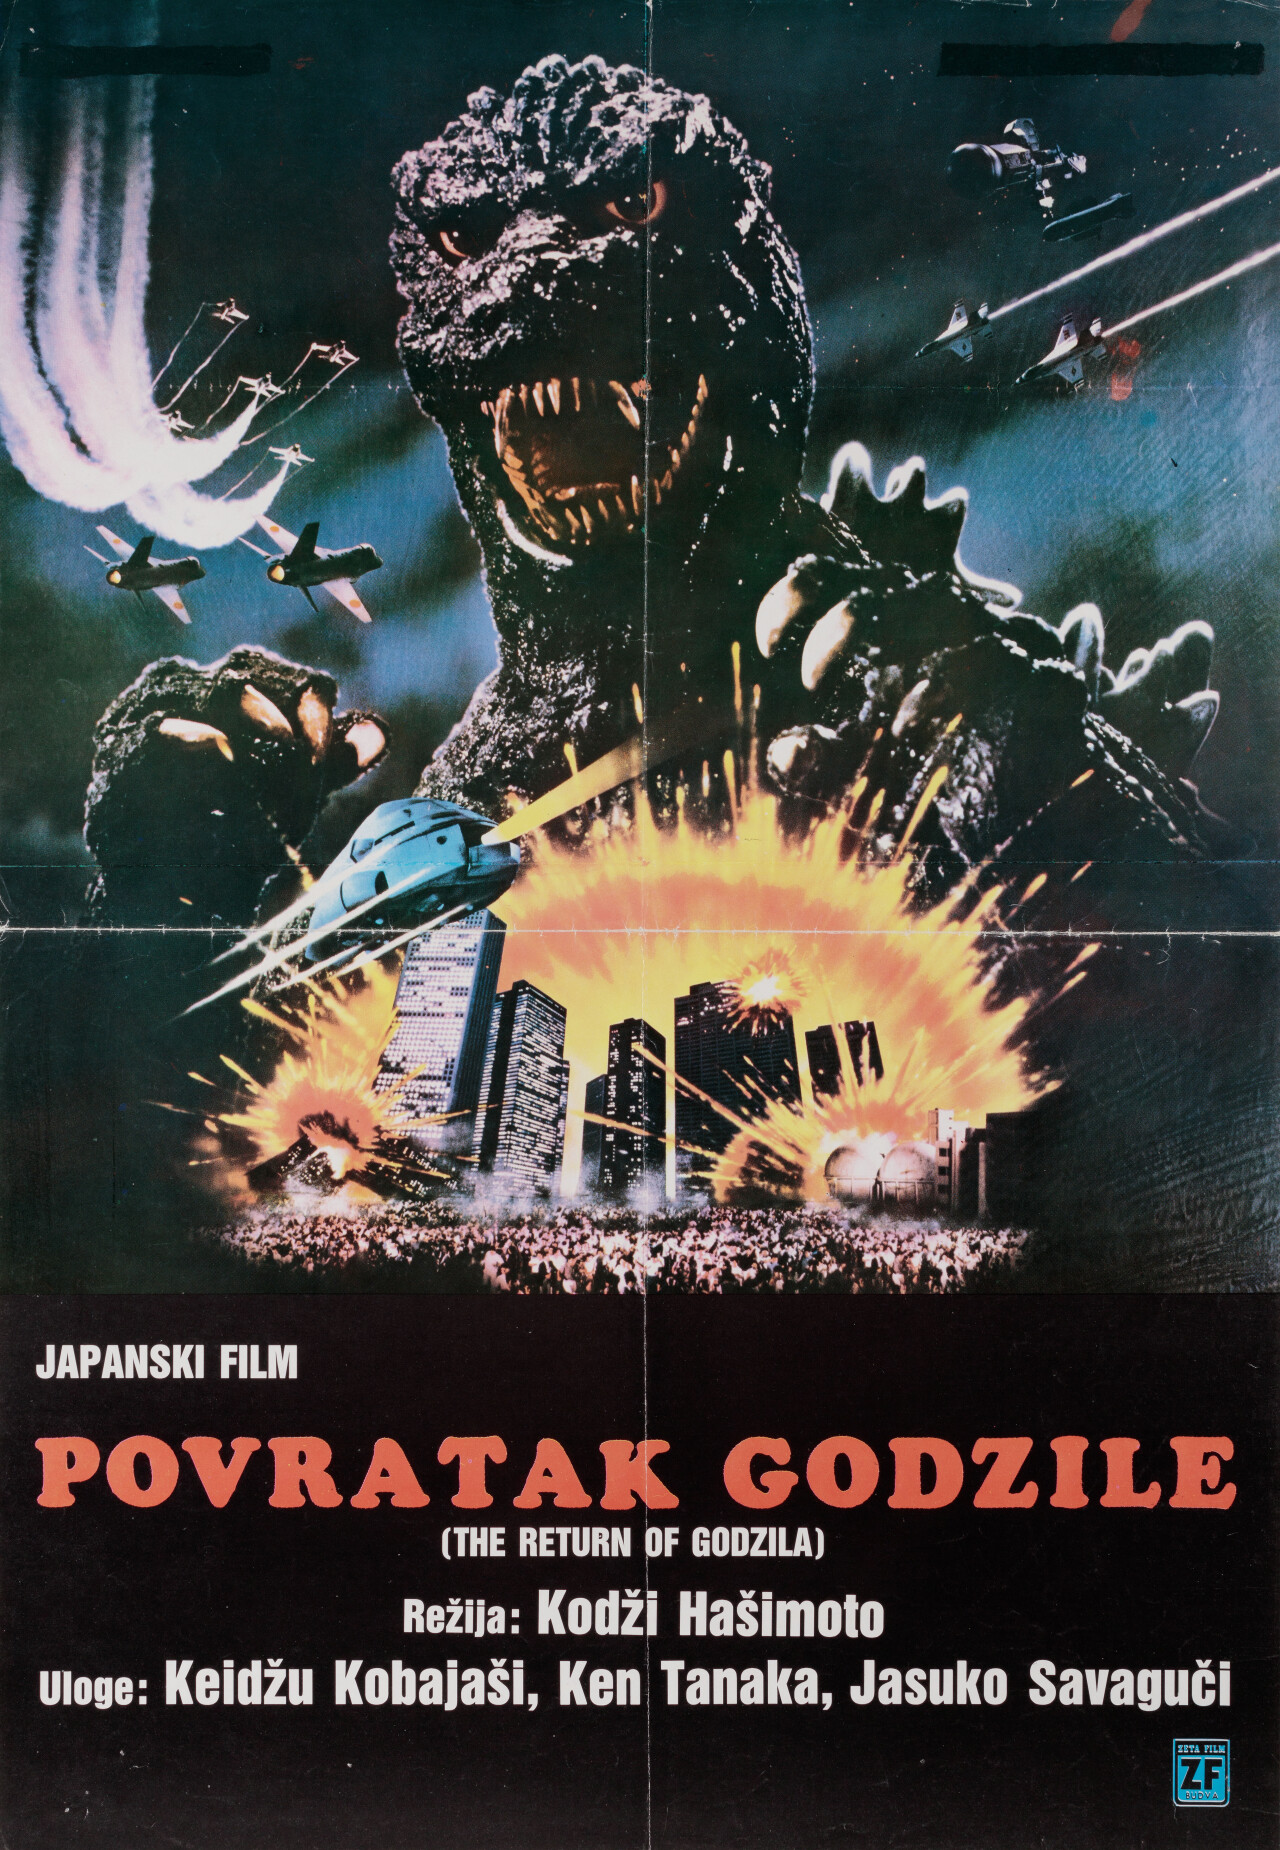 Возвращение Годзиллы (Godzilla 1985 The Legend Is Reborn, 1984), режиссёр Кодзи Хашимото, югославский постер к фильму (монстры, 1984 год)